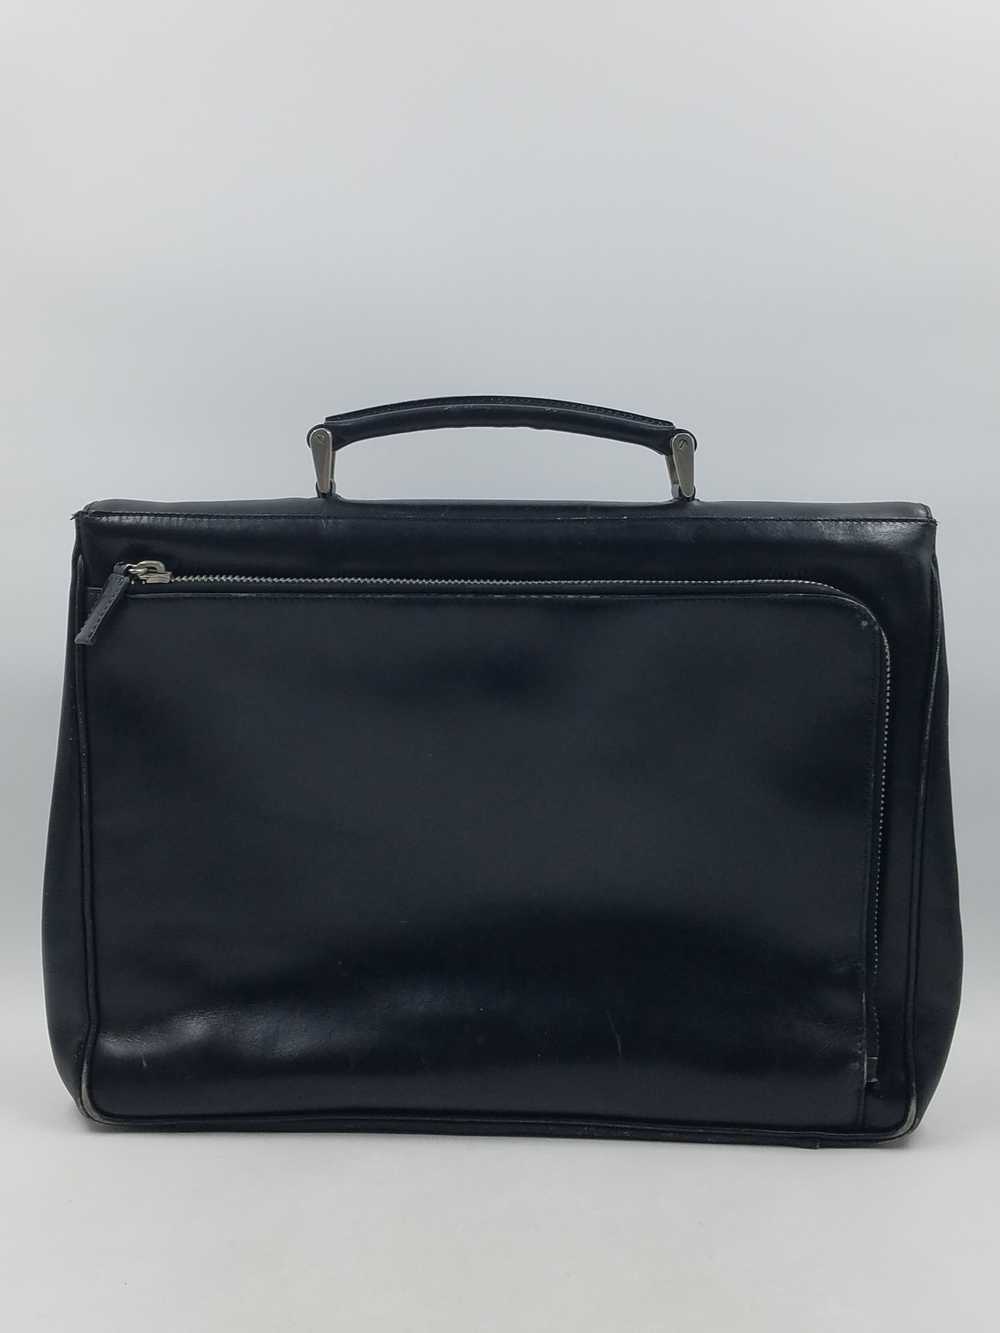 Authentic Prada Black Leather Briefcase - image 2